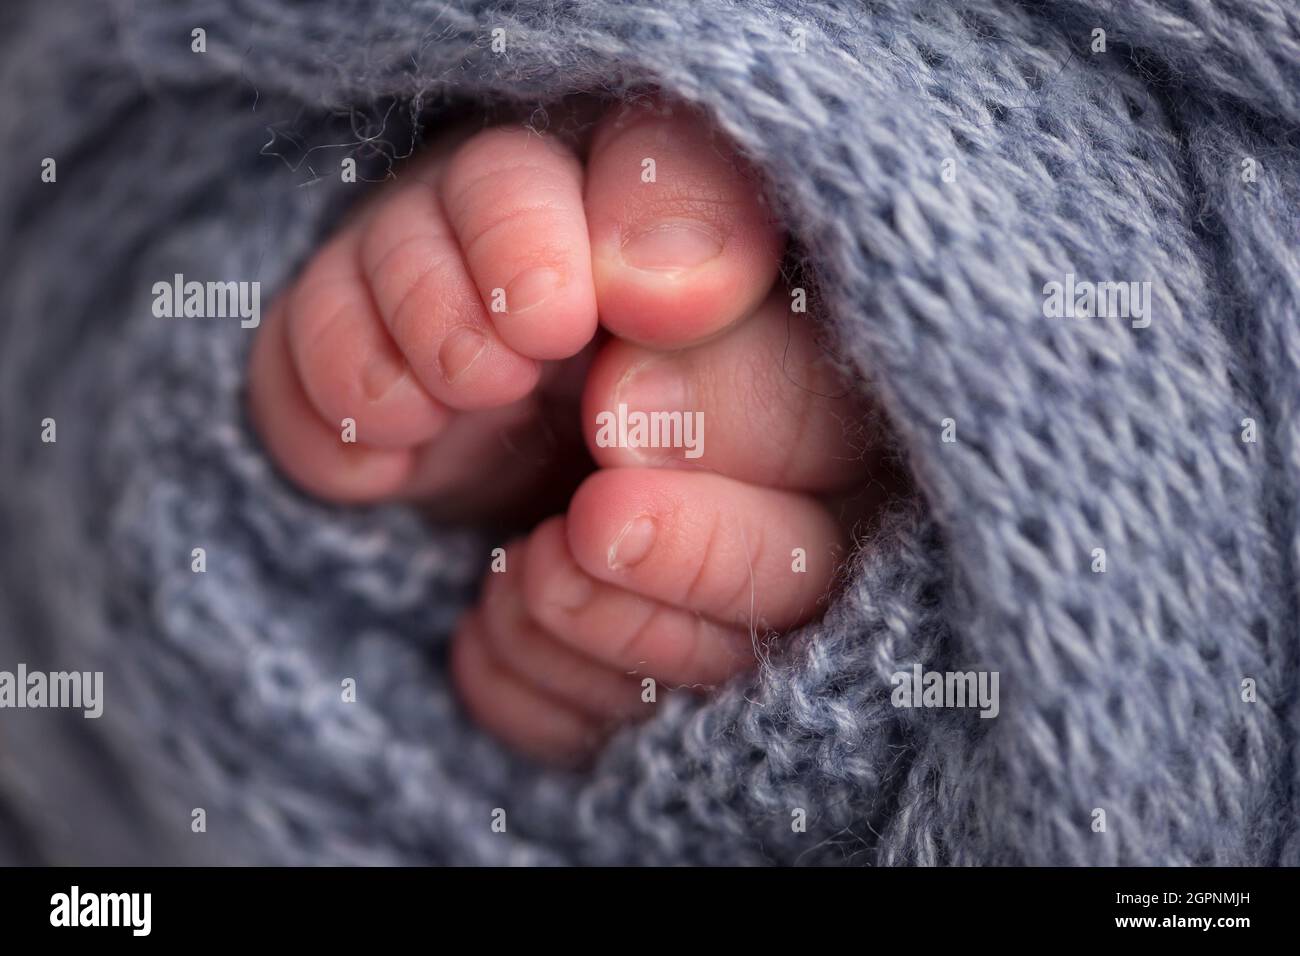 Foto de primer plano de las piernas de un recién nacido sobre un cuadros gris claro. Piernas y dedos de los pies de un recién nacido en una manta blanca suave Foto de stock